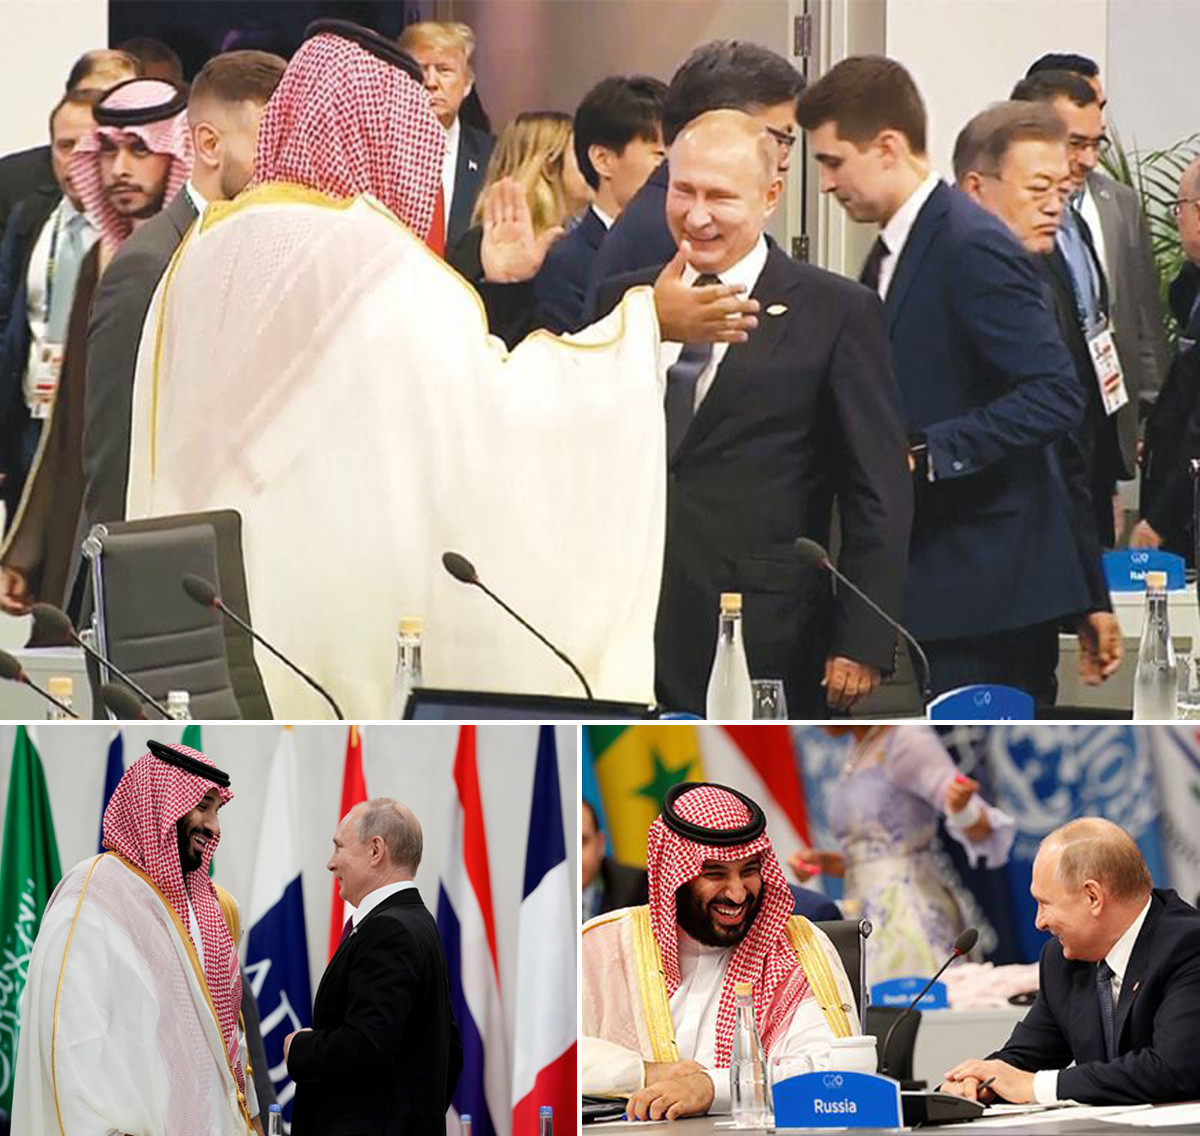 Cú đập tay chào hỏi độc đáo và những hình ảnh thân thiết giữa giữa Tổng thống Nga Vladirmia Putin và Thái tử Mohammed bin Salman tại Hội nghị G20 tại Argentina năm 2018. Ảnh: AFP - Reuters